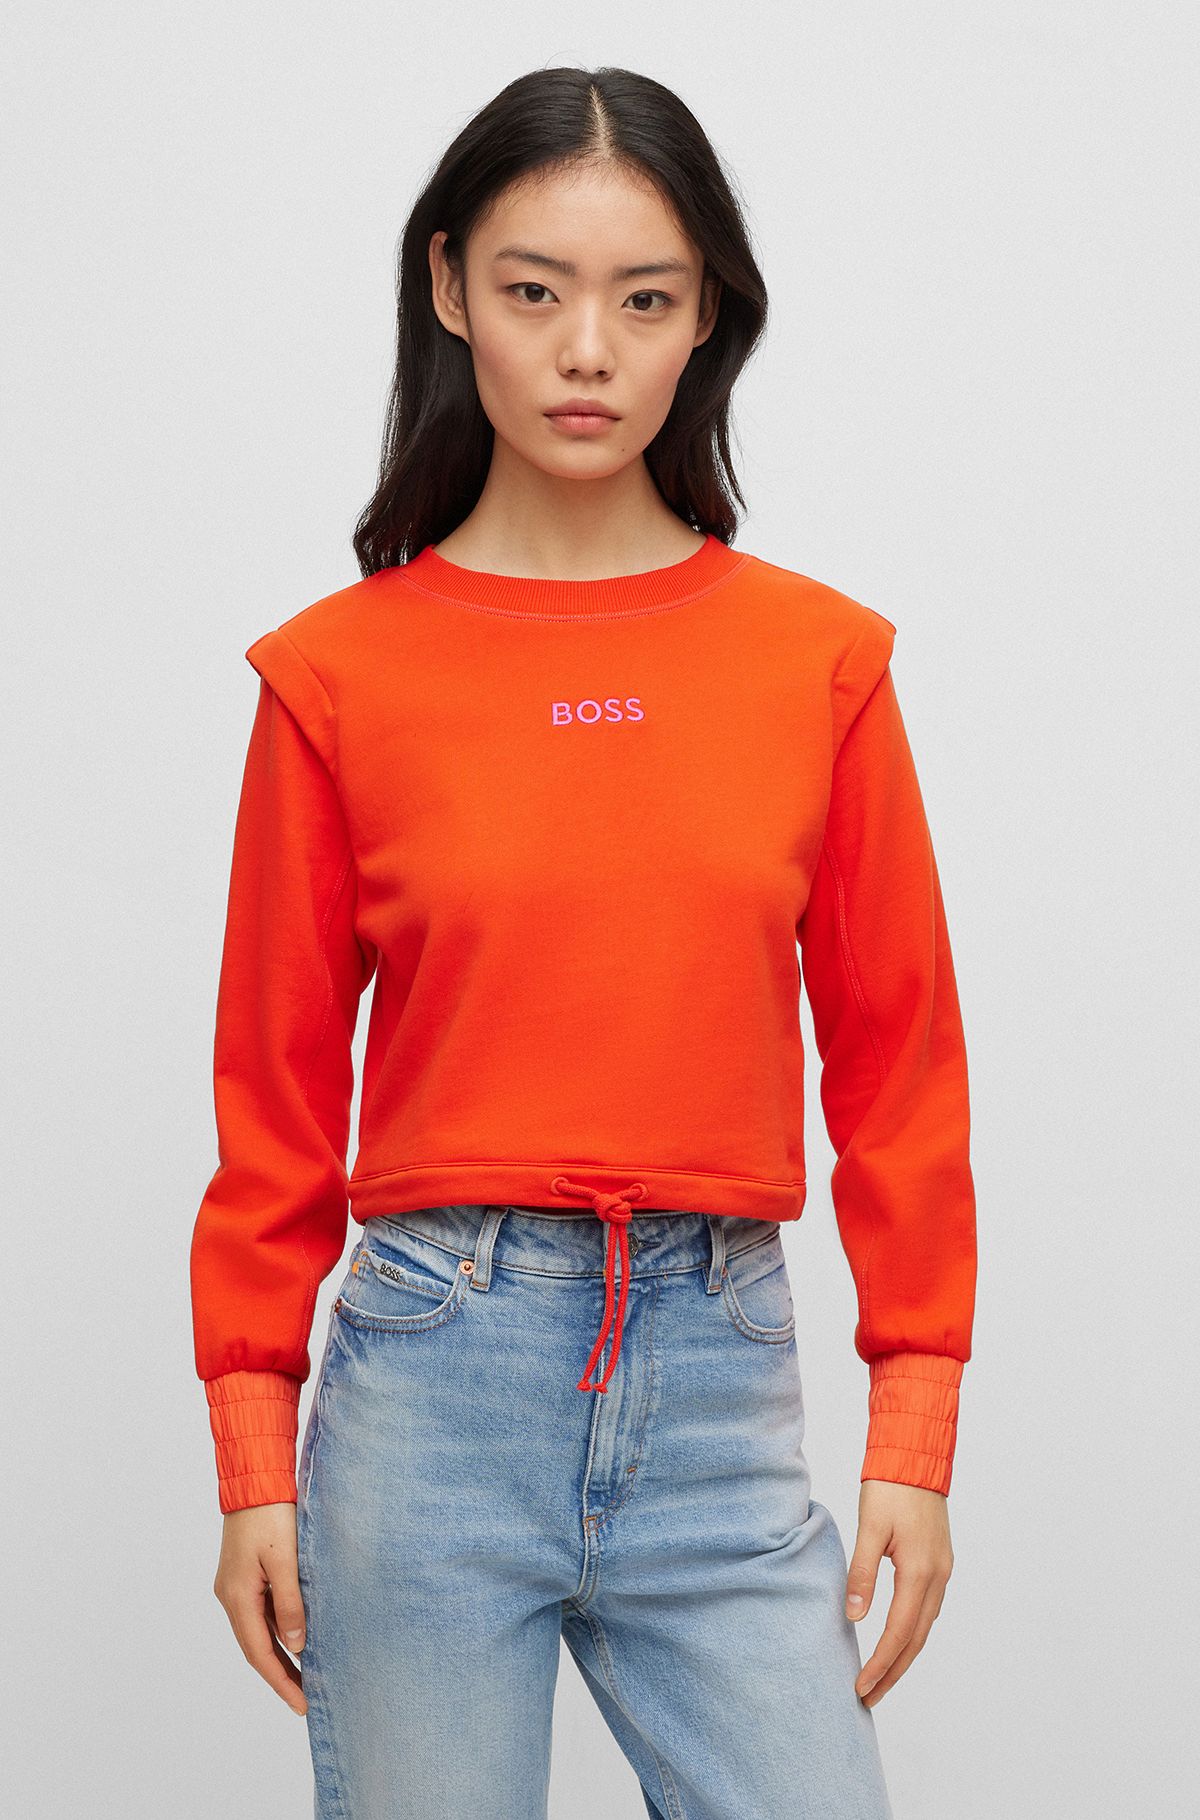 Best Orange Sweatshirts for Women by HUGO BOSS